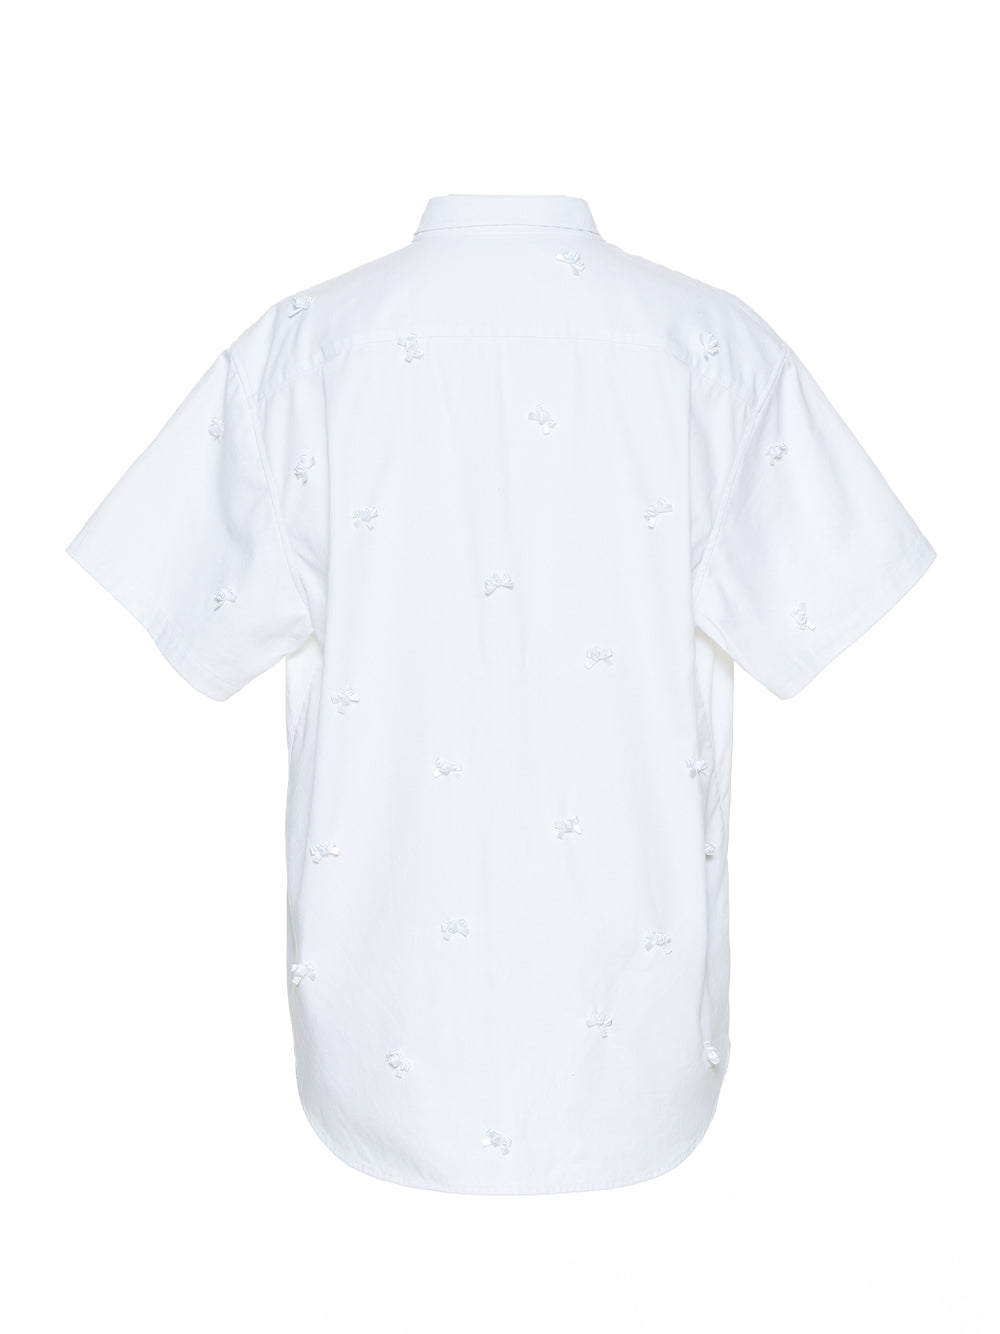 Oversized Ribbon Shirt (White)